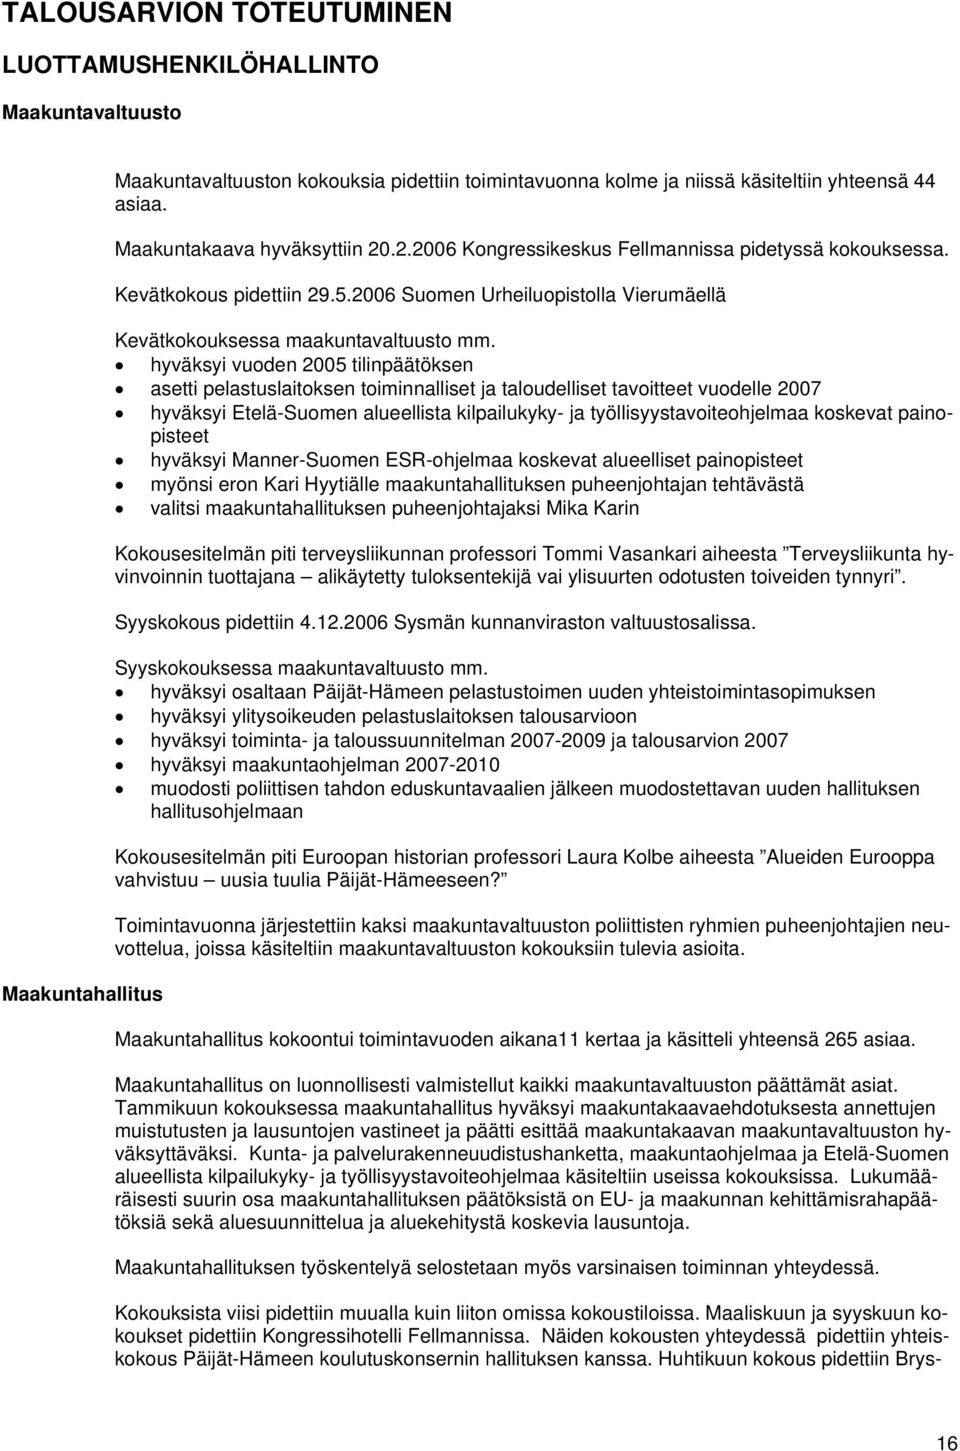 hyväksyi vuoden 2005 tilinpäätöksen asetti pelastuslaitoksen toiminnalliset ja taloudelliset tavoitteet vuodelle 2007 hyväksyi Etelä-Suomen alueellista kilpailukyky- ja työllisyystavoiteohjelmaa